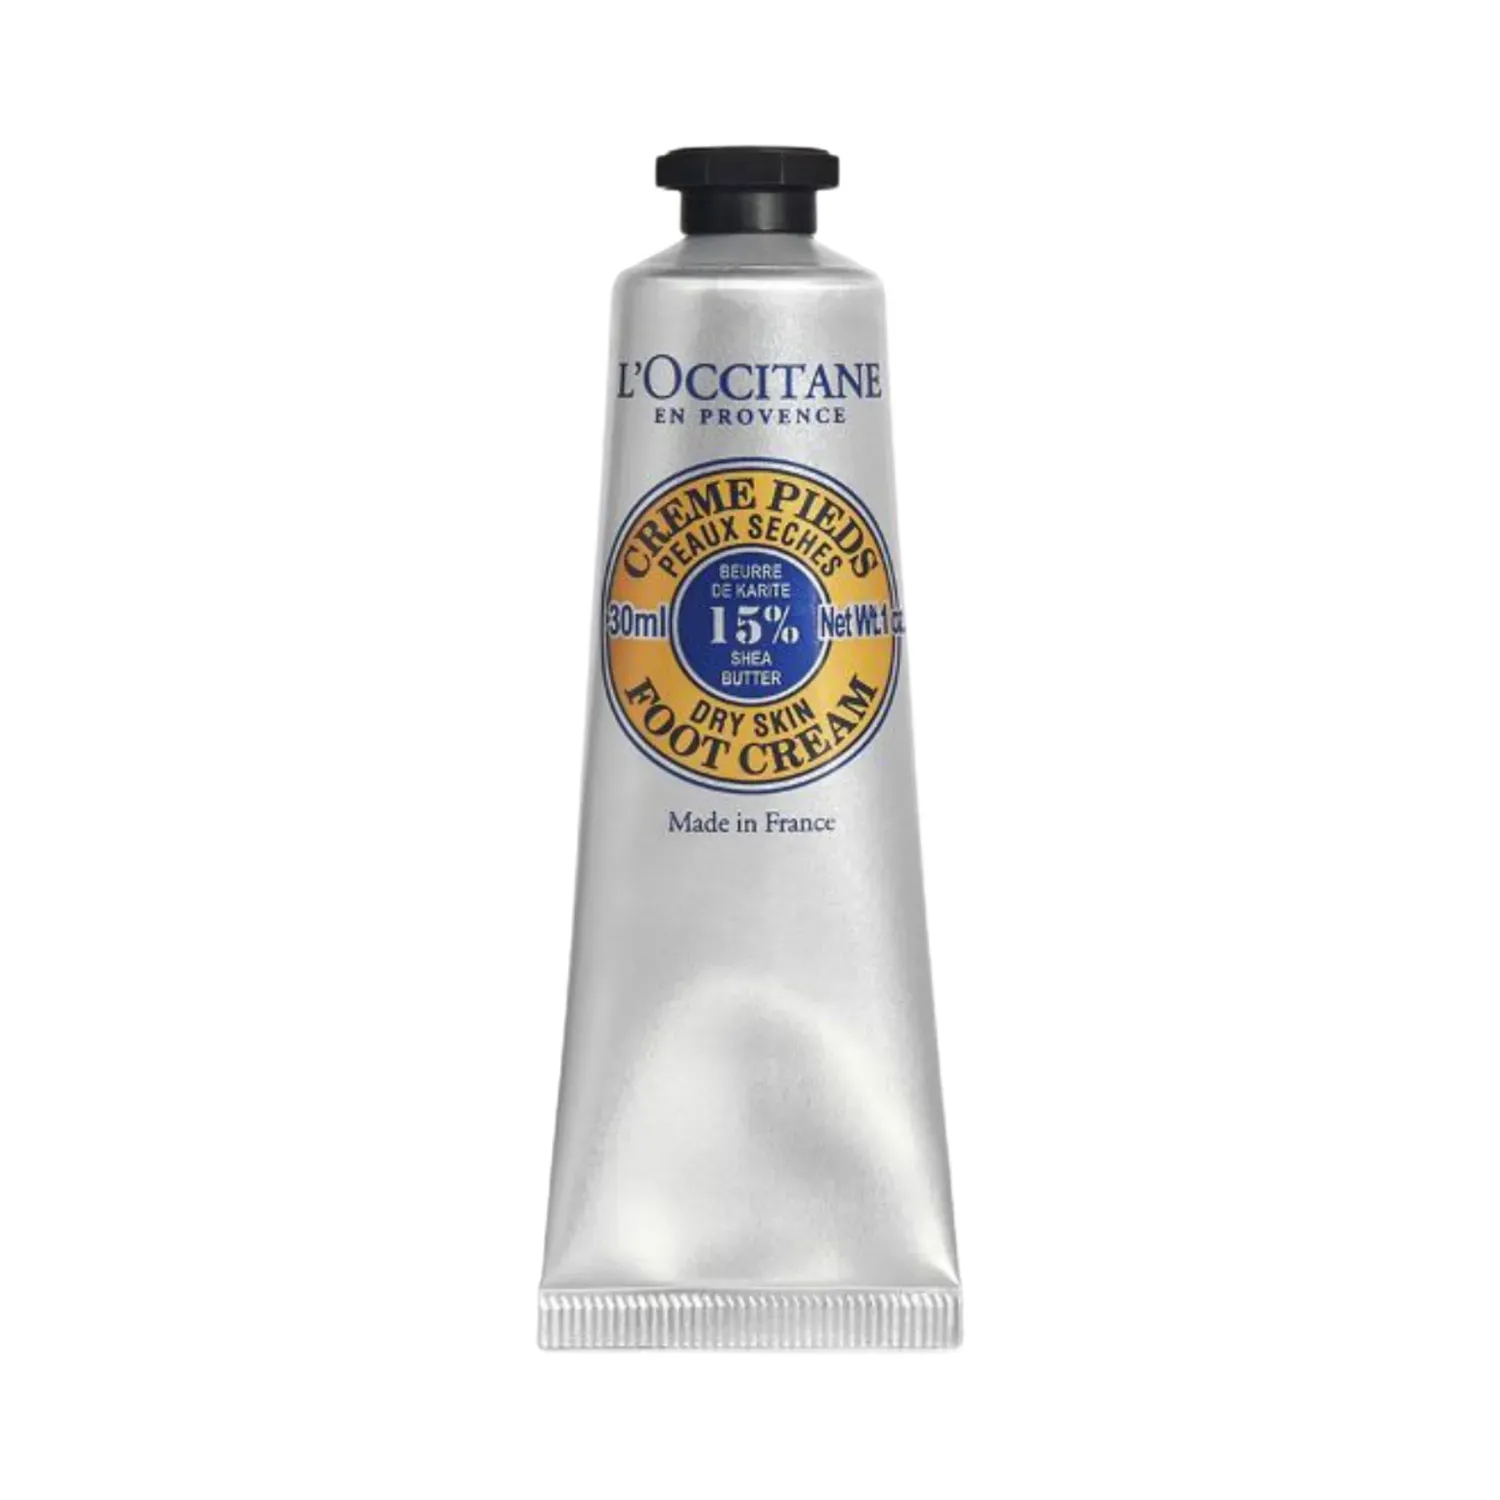 L'occitane | L'occitane Shea Butter Foot Cream - (30ml)